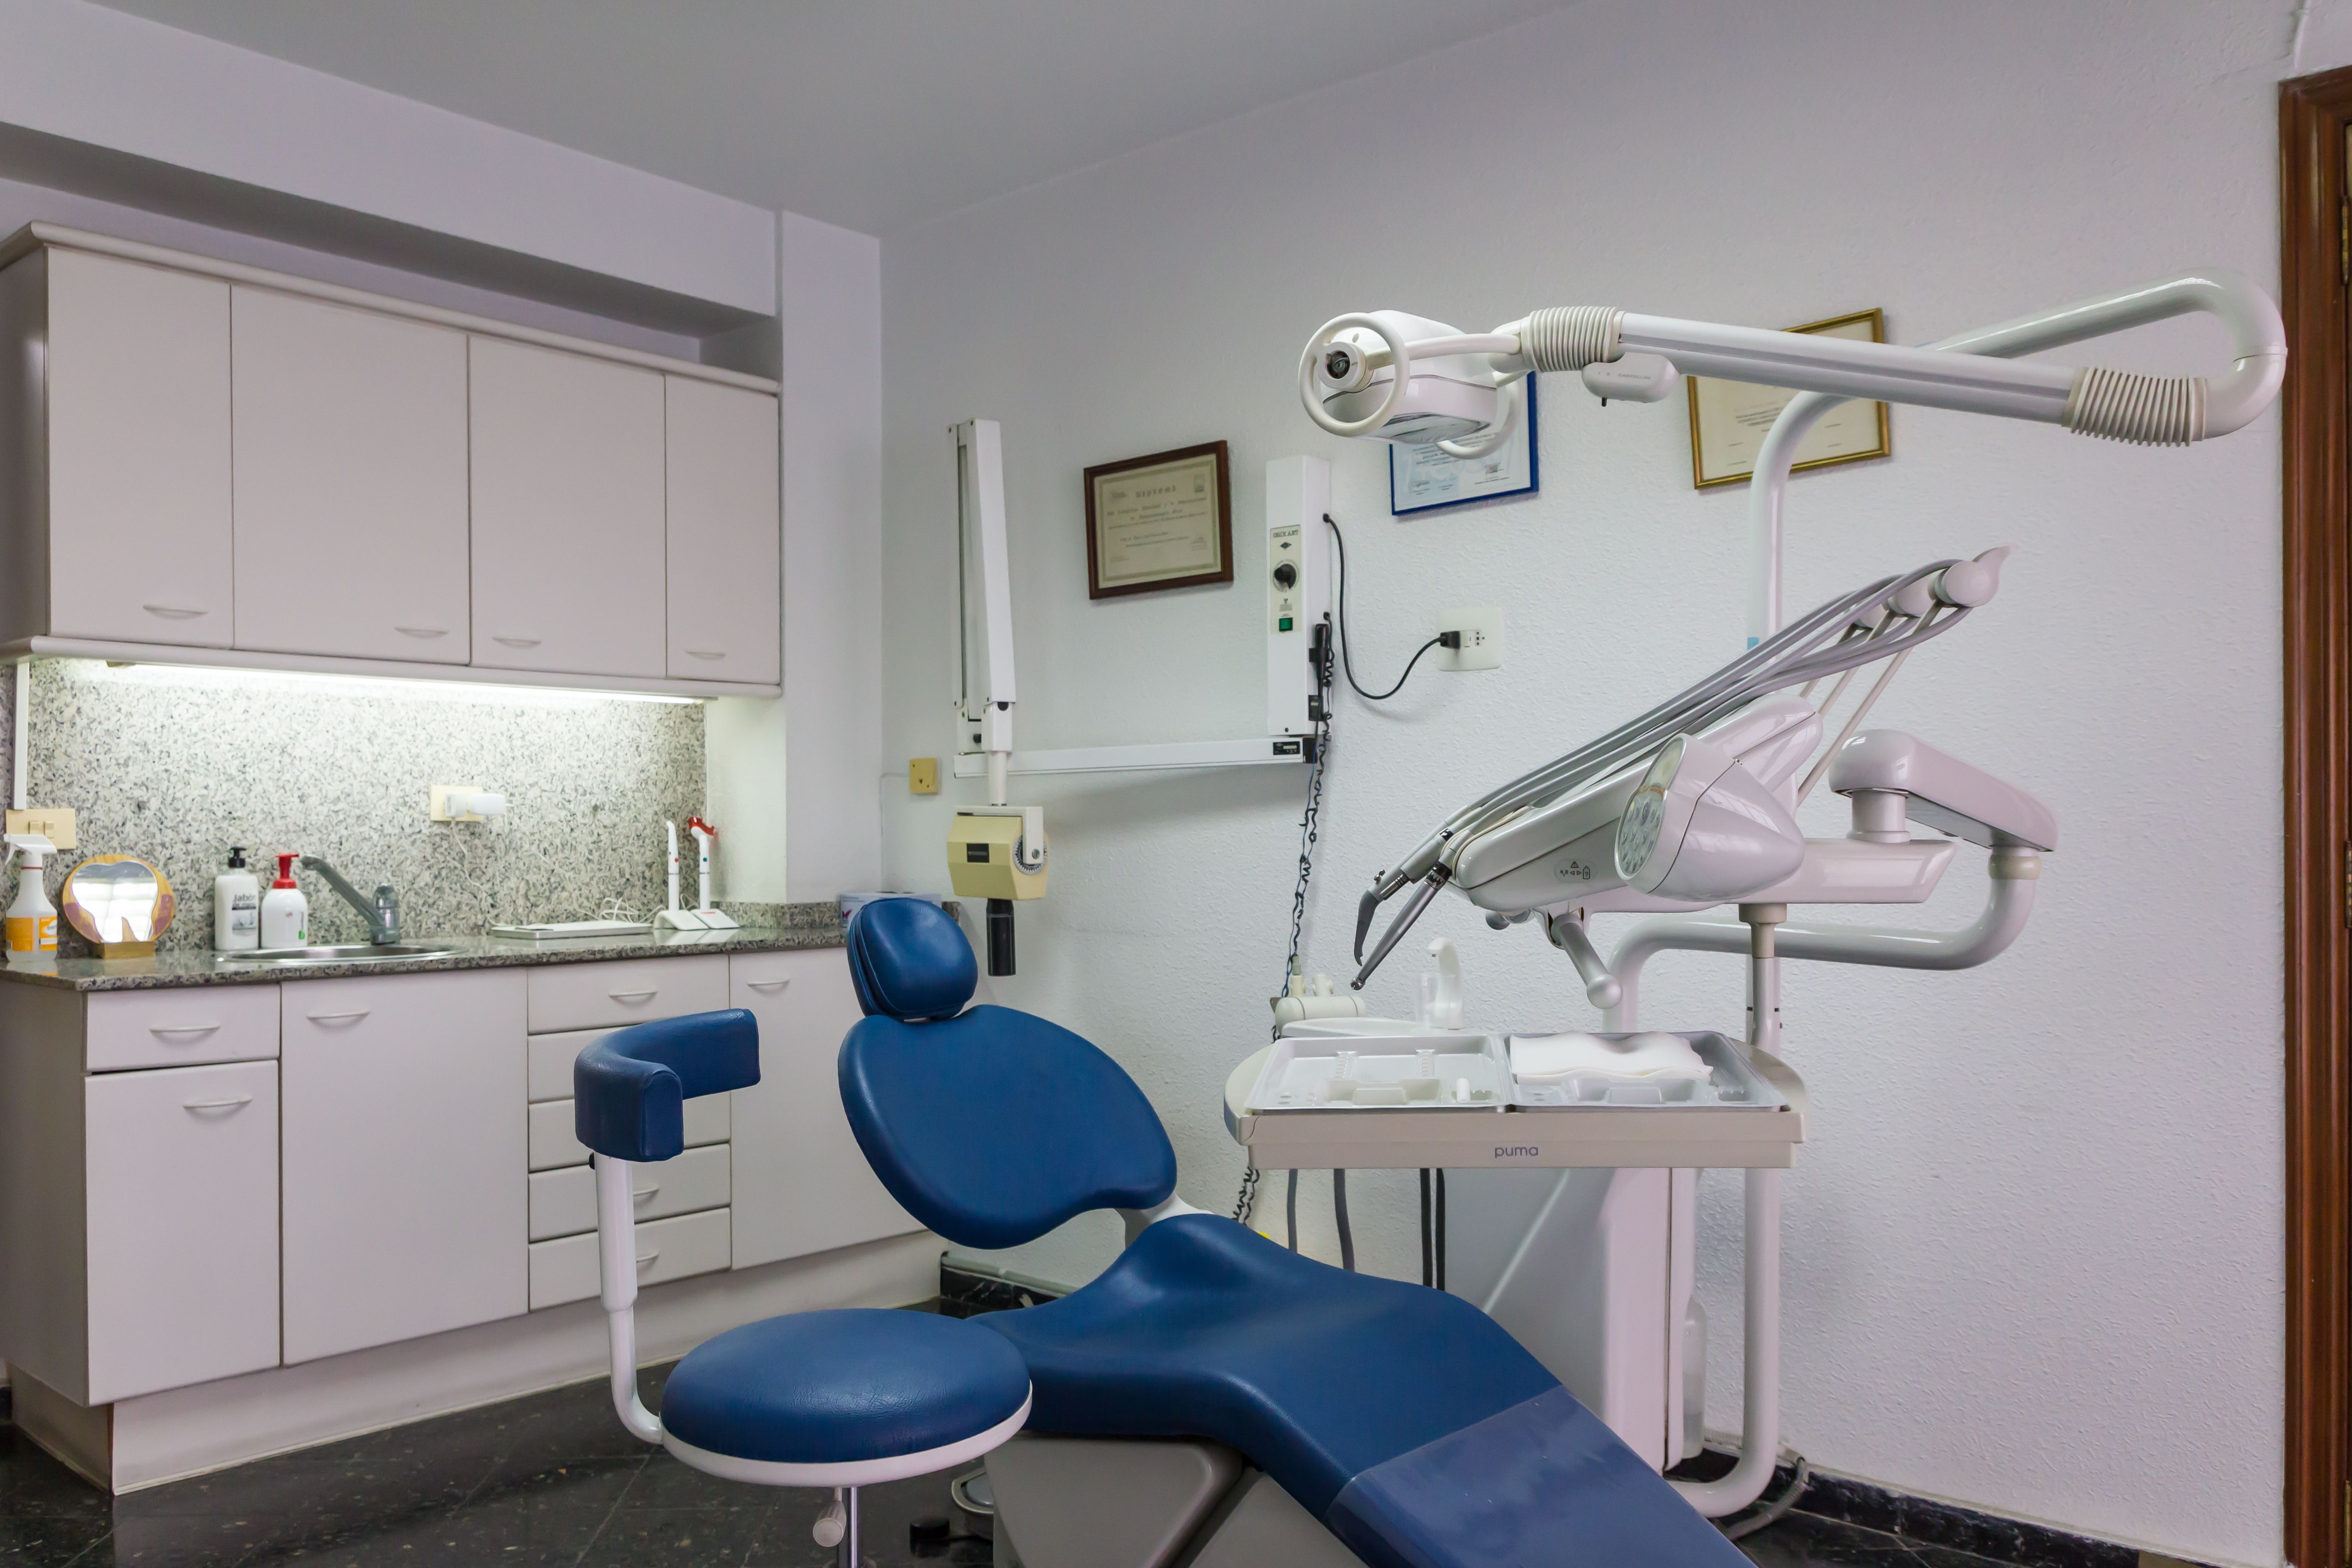 Foto 5 de Dentistas en Alzira | Clínica Dental Presencia